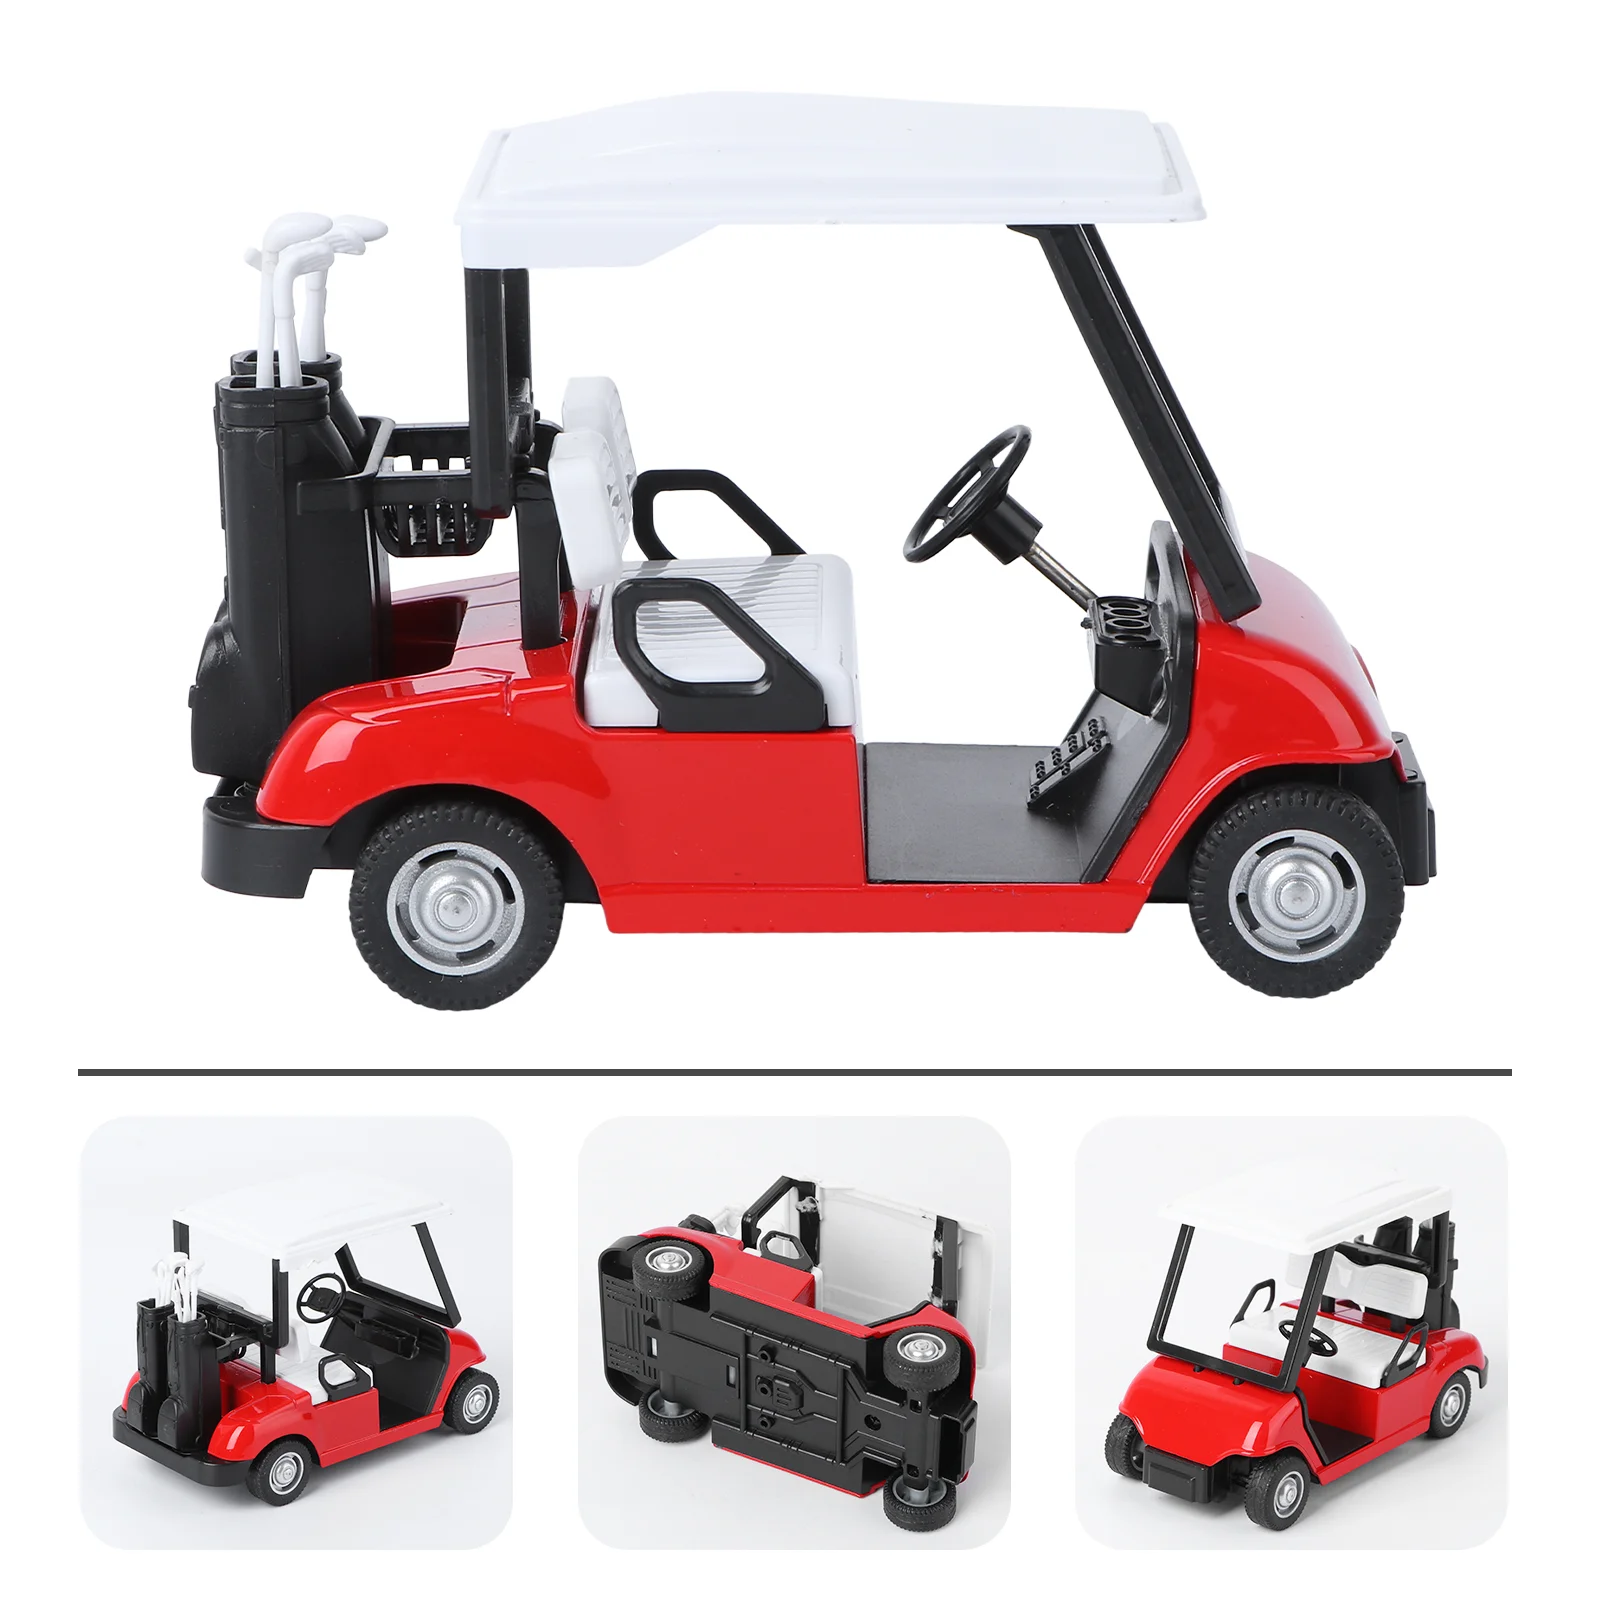 

Миниатюрная тележка Golfs, Игрушечная модель, масштаб 1:20, игрушечный автомобиль, игрушечный автомобиль из сплава